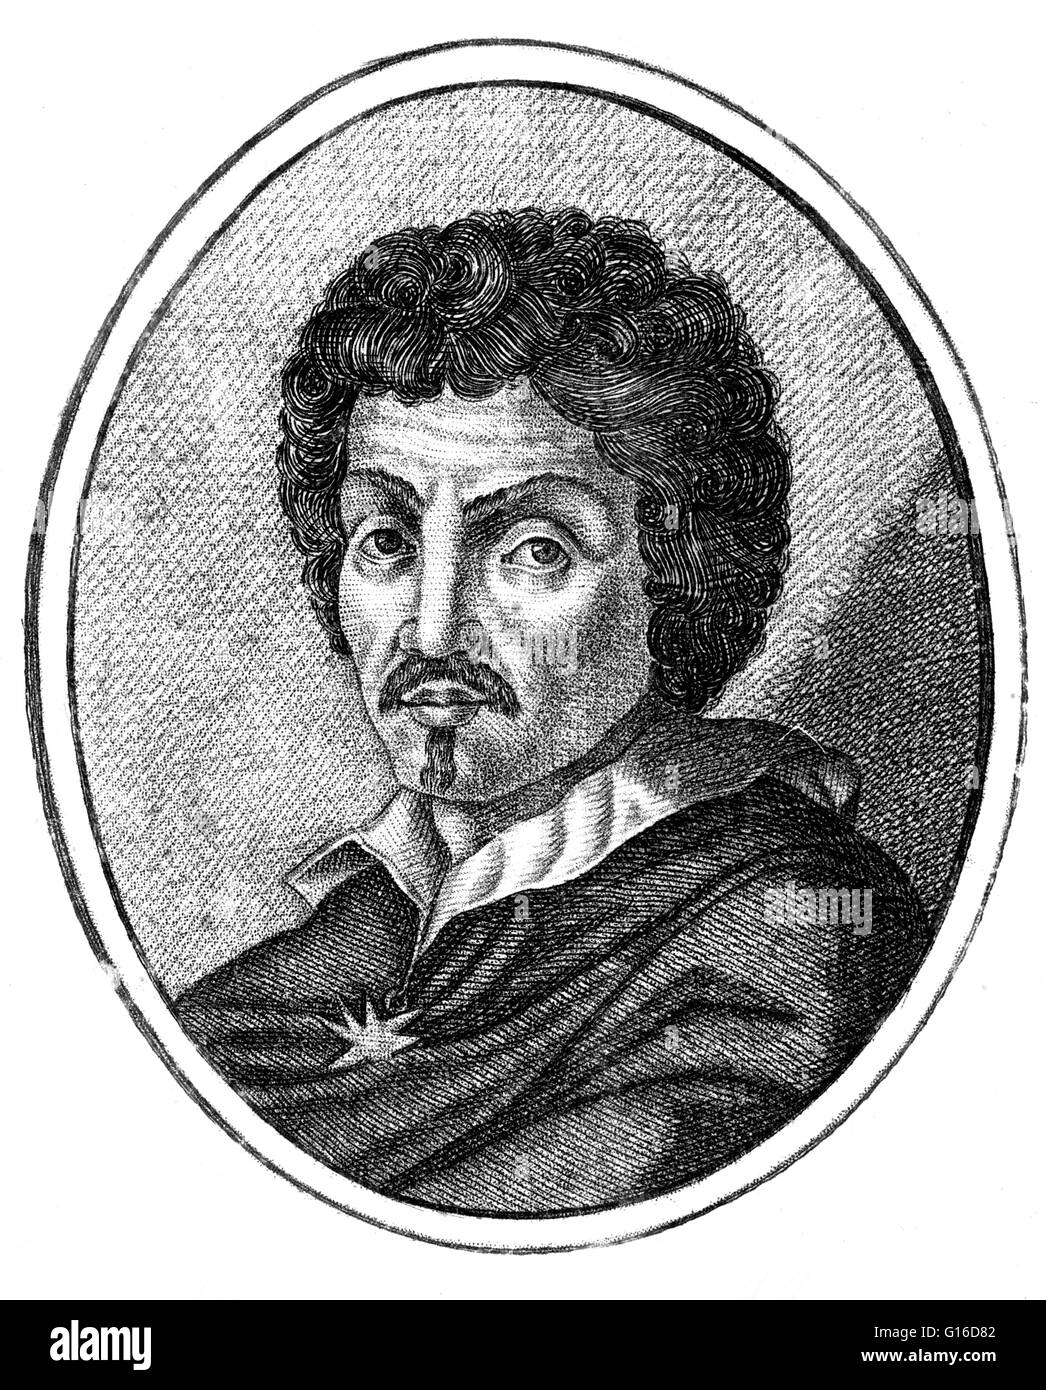 Michelangelo Merisi (ou Amerighi) da Caravaggio (Septembre 29, 1571 - Juillet 18, 1610) était un artiste italien. Ses tableaux, qui combinent une observation réaliste de l'état humain, à la fois physique et émotionnel, avec une forte utilisation de l'éclairage, avait un format Banque D'Images